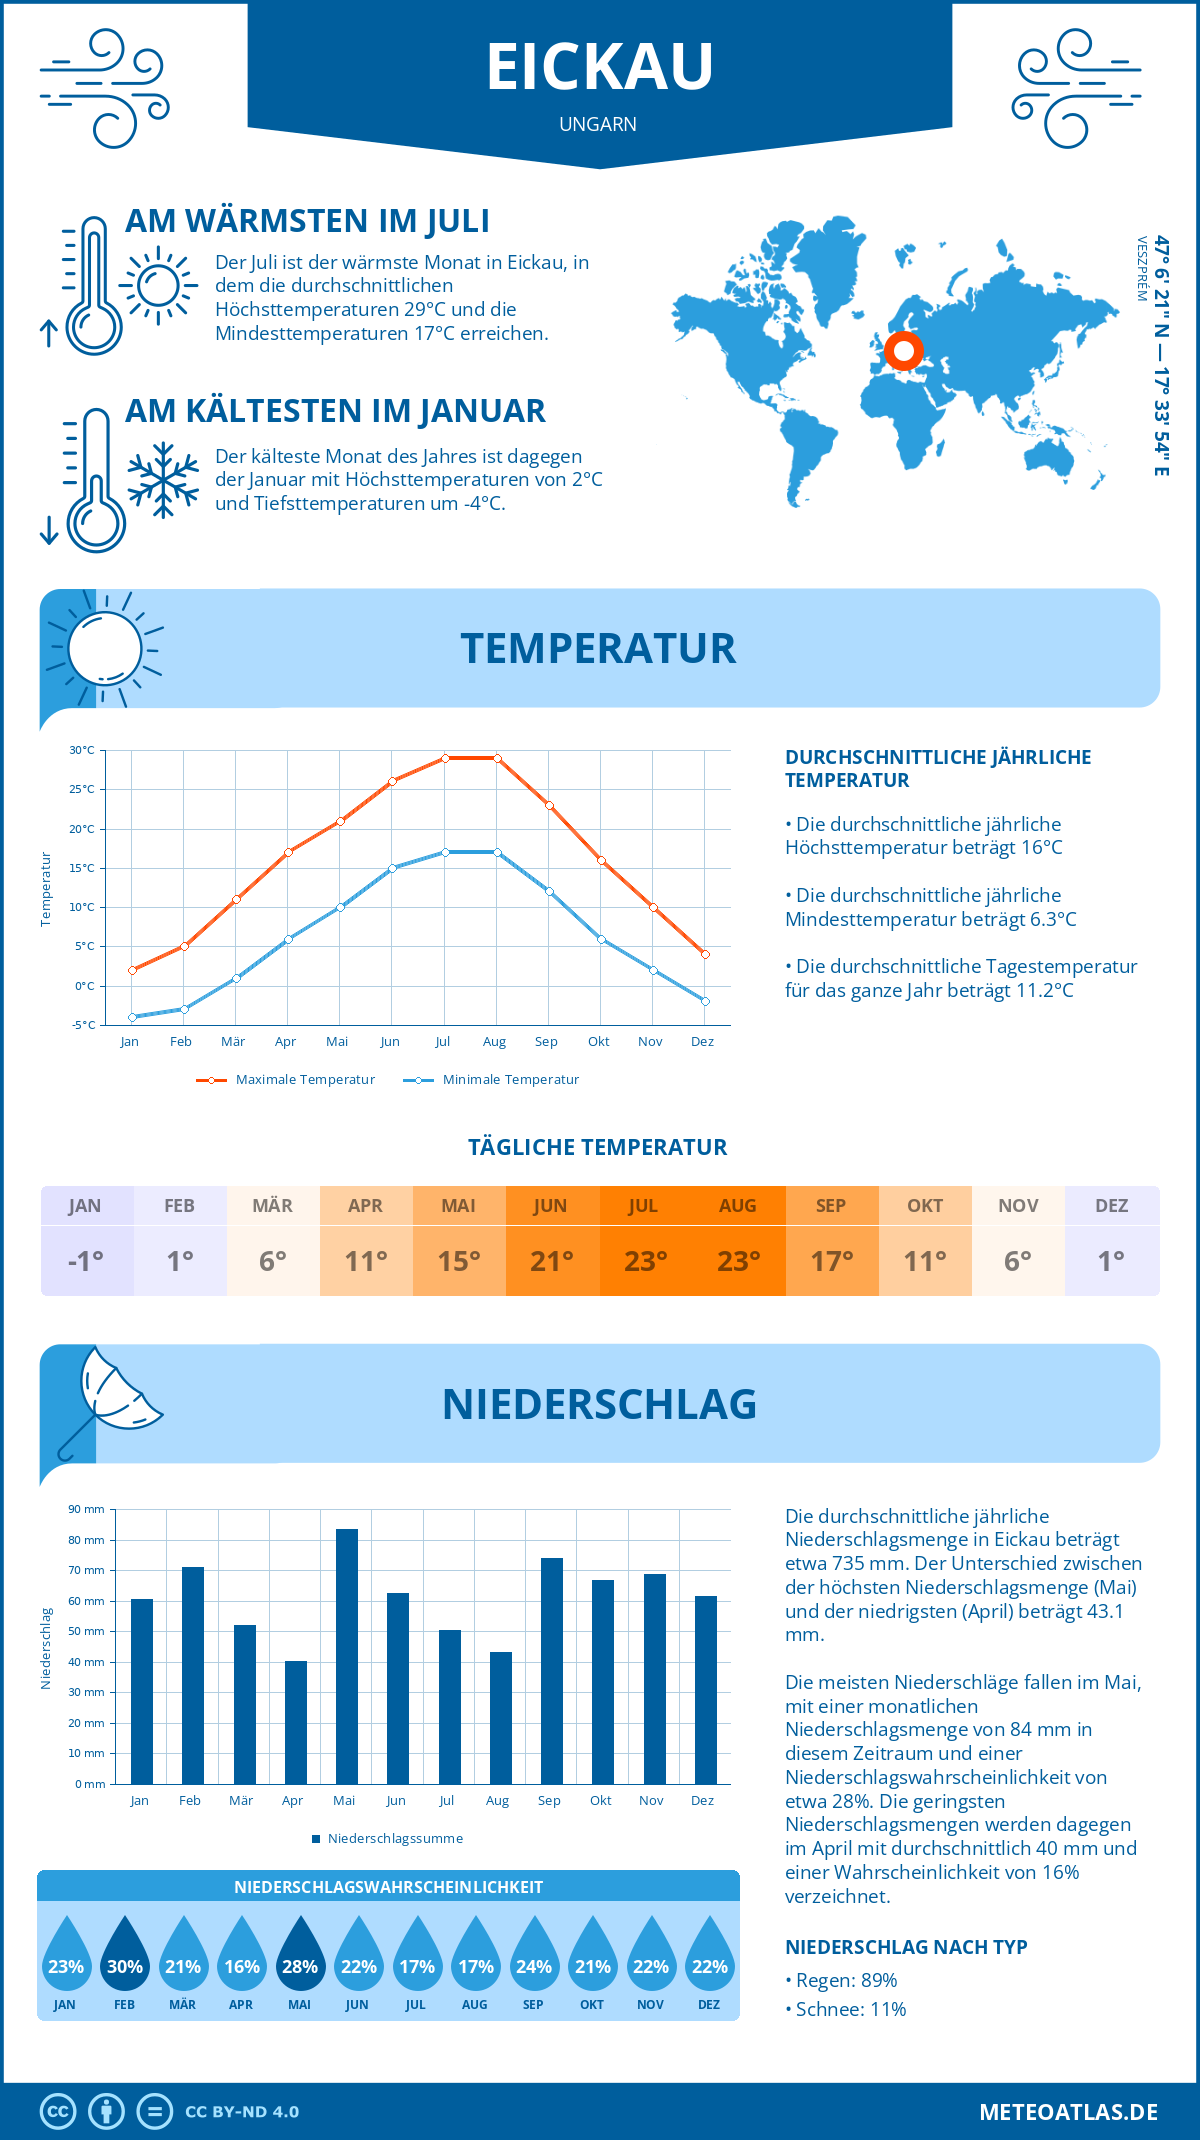 Wetter Eickau (Ungarn) - Temperatur und Niederschlag